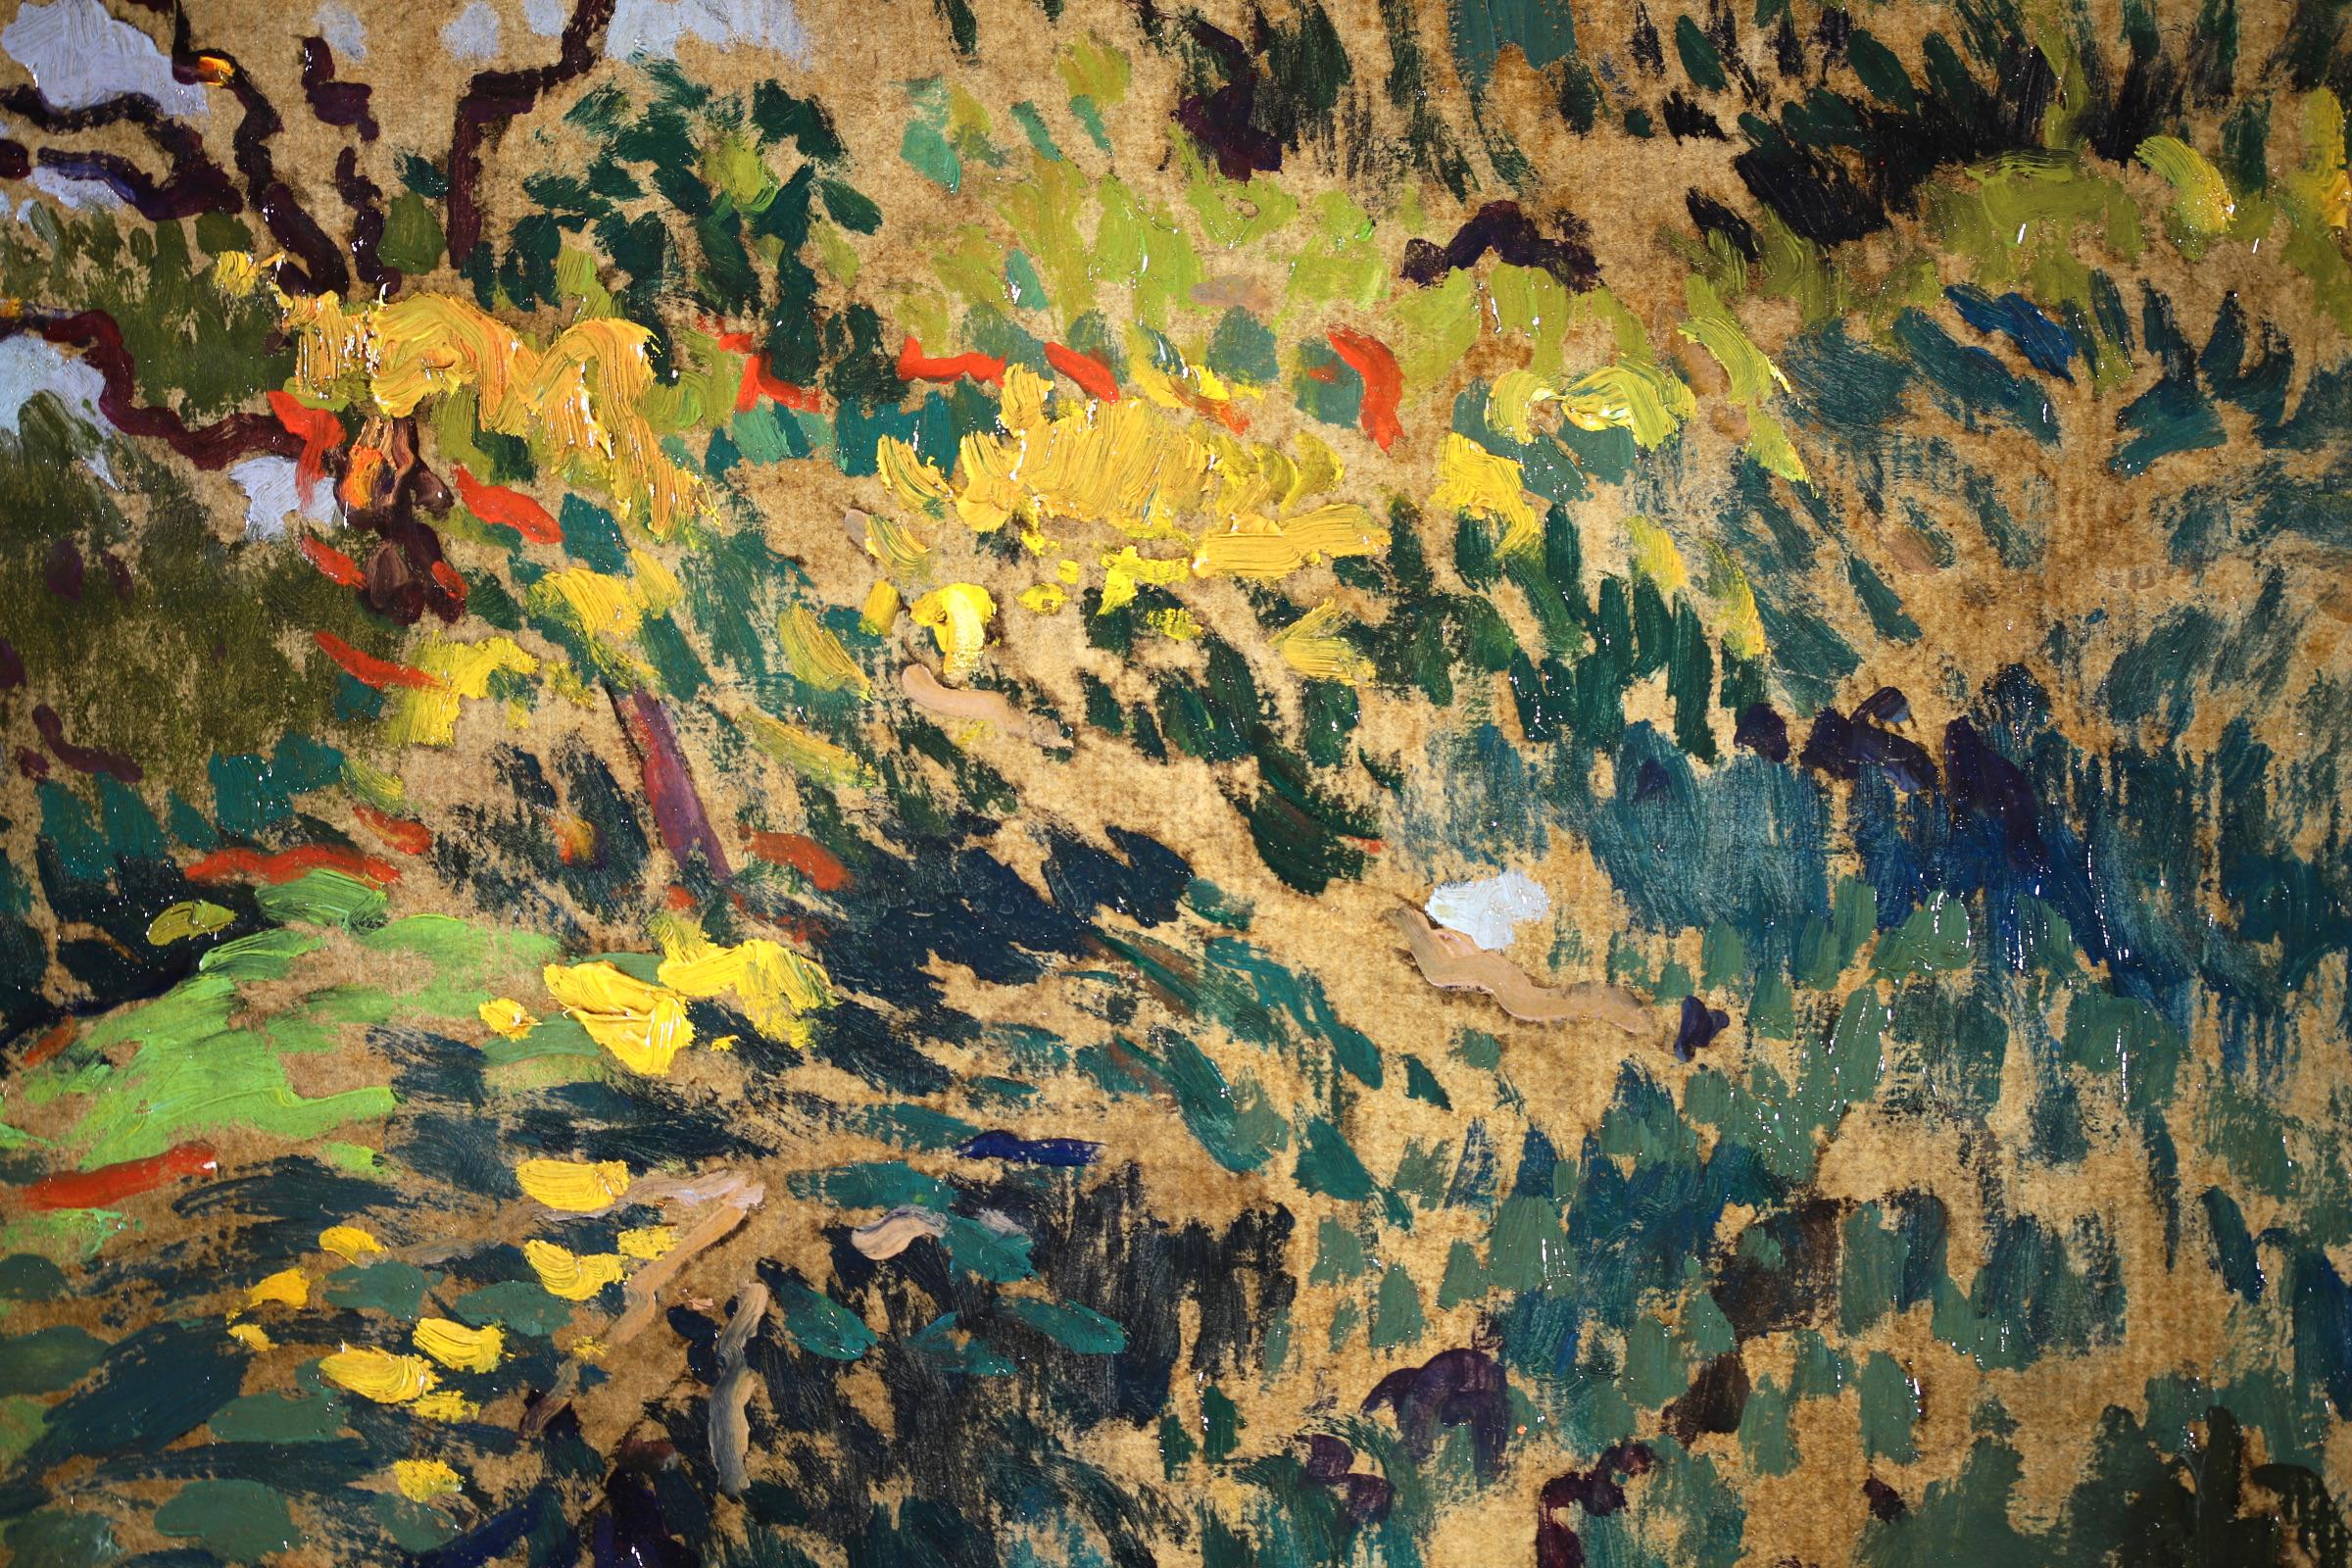 Paysage post-impressionniste signé, huile sur panneau, vers 1914, par le peintre français Paul Elie Gernez. L'œuvre représente des personnages marchant à l'ombre d'arbres dans une forêt. Peint dans des tons prédominants de vert, de bleu et de jaune,